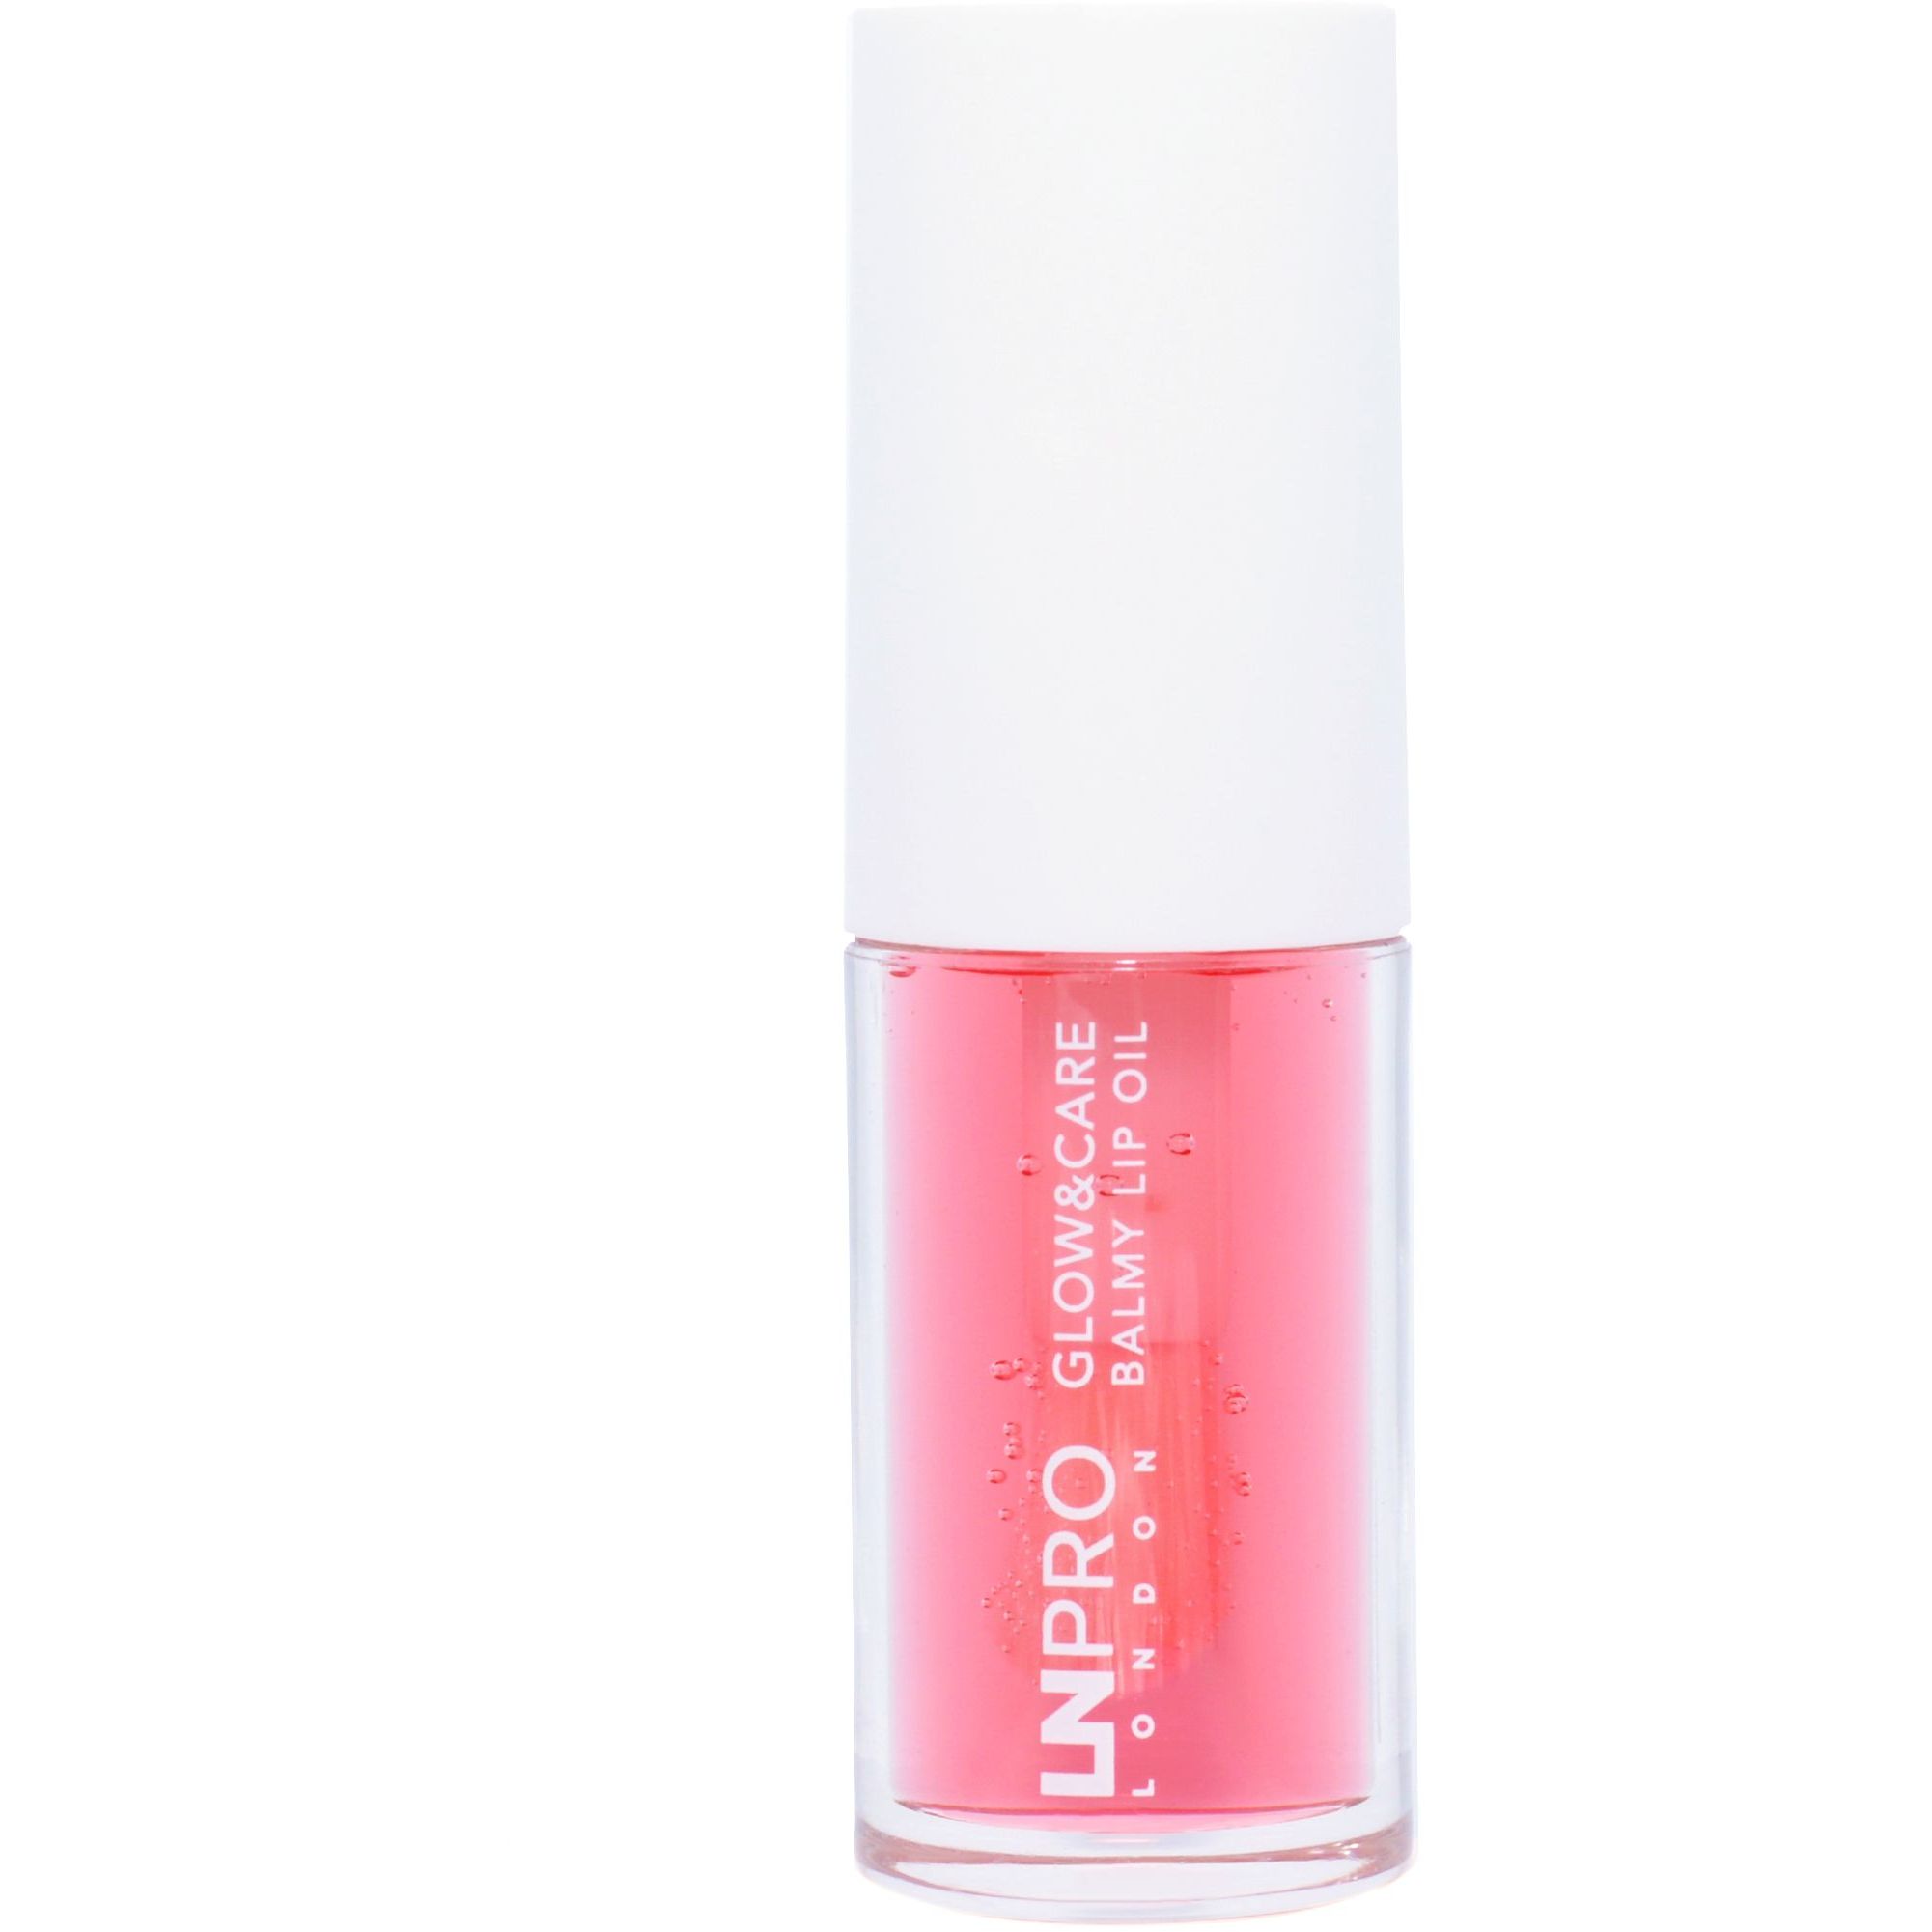 Олія-бальзам для губ LN Pro Glow & Care Balmy Lip Oil відтінок 102, 3.7 мл - фото 5